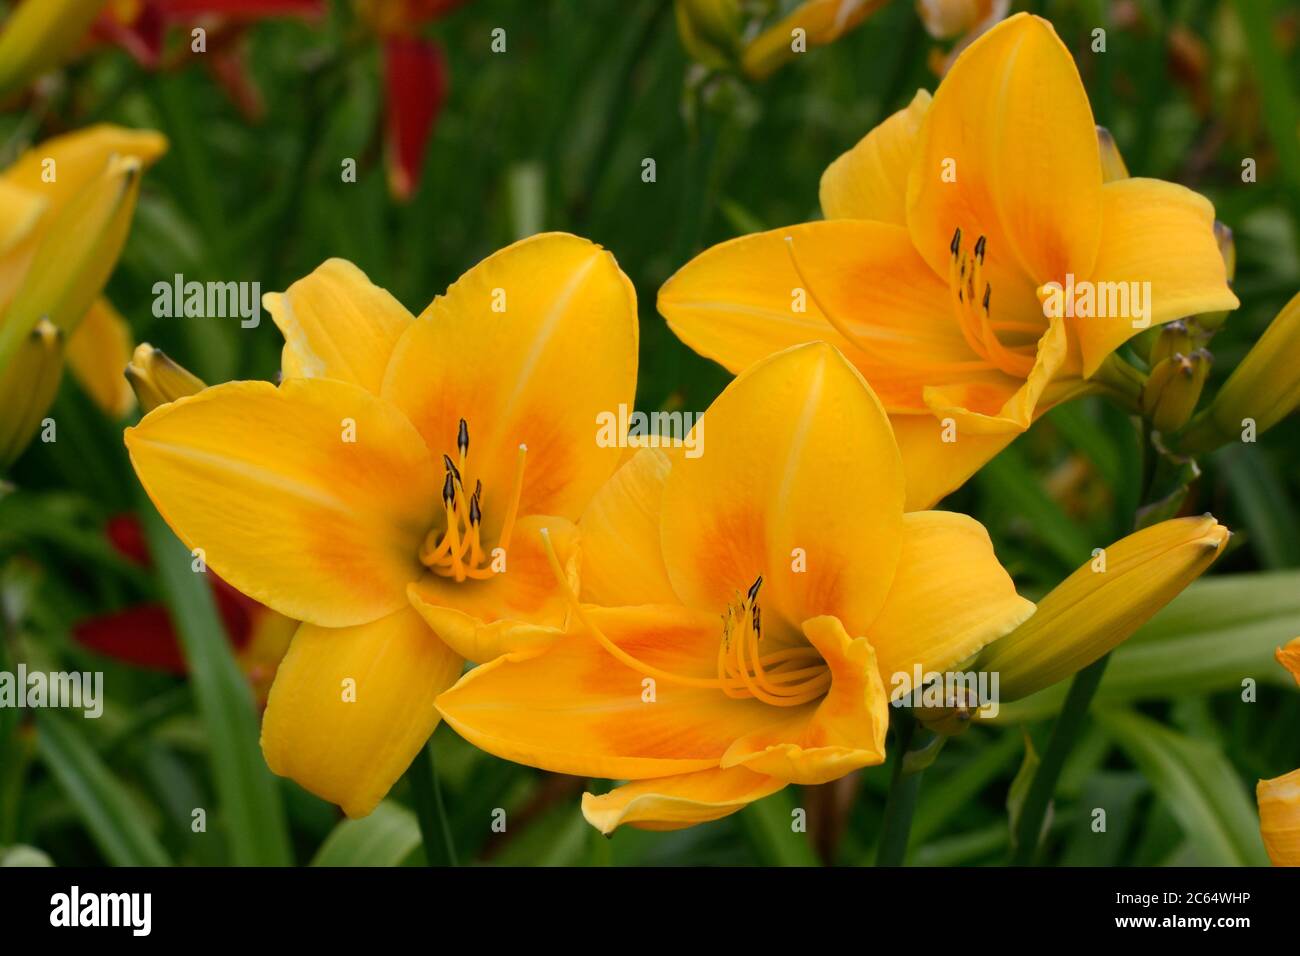 Hemerocallis Chicago sunrise orange yellow treprapoid daylily bloom flowers Stock Photo